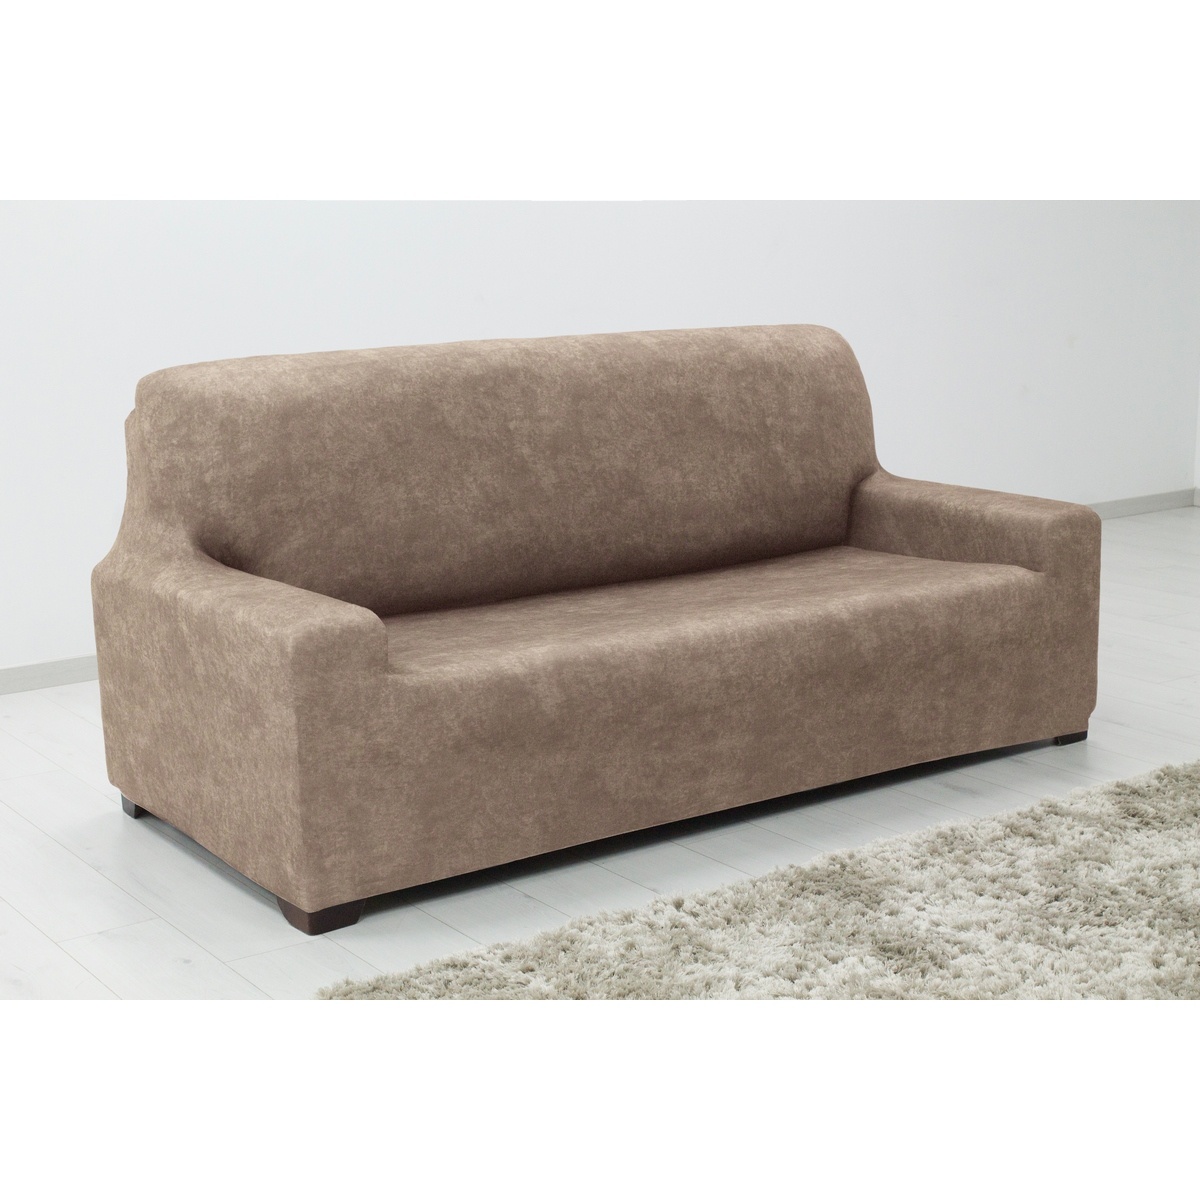  ESTIVELLA multielasztikus kanapéhuzat bézs színű, 140-180 cm, 140 - 180 cm